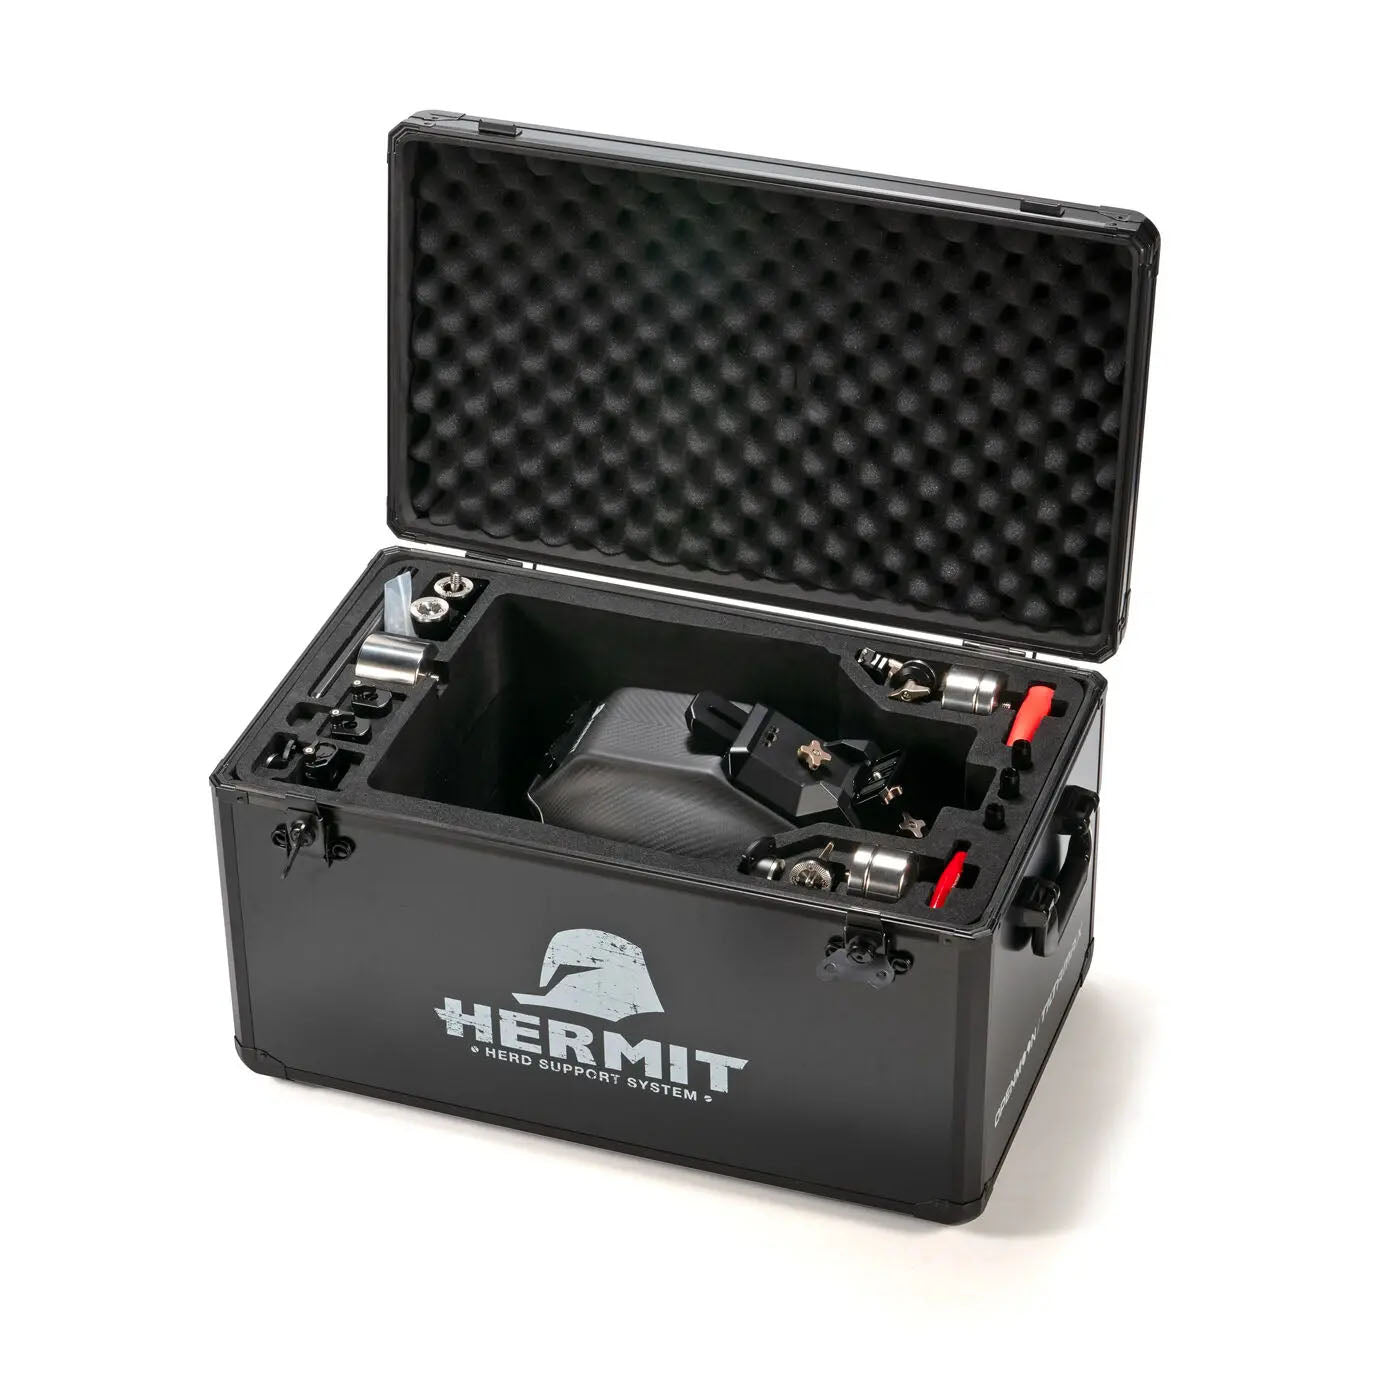 TILTA(ティルタ) Hermit POV Support System (ヘルメット) (XL) - Gold Mount(アントンマウント) TA-HR-XL-AB